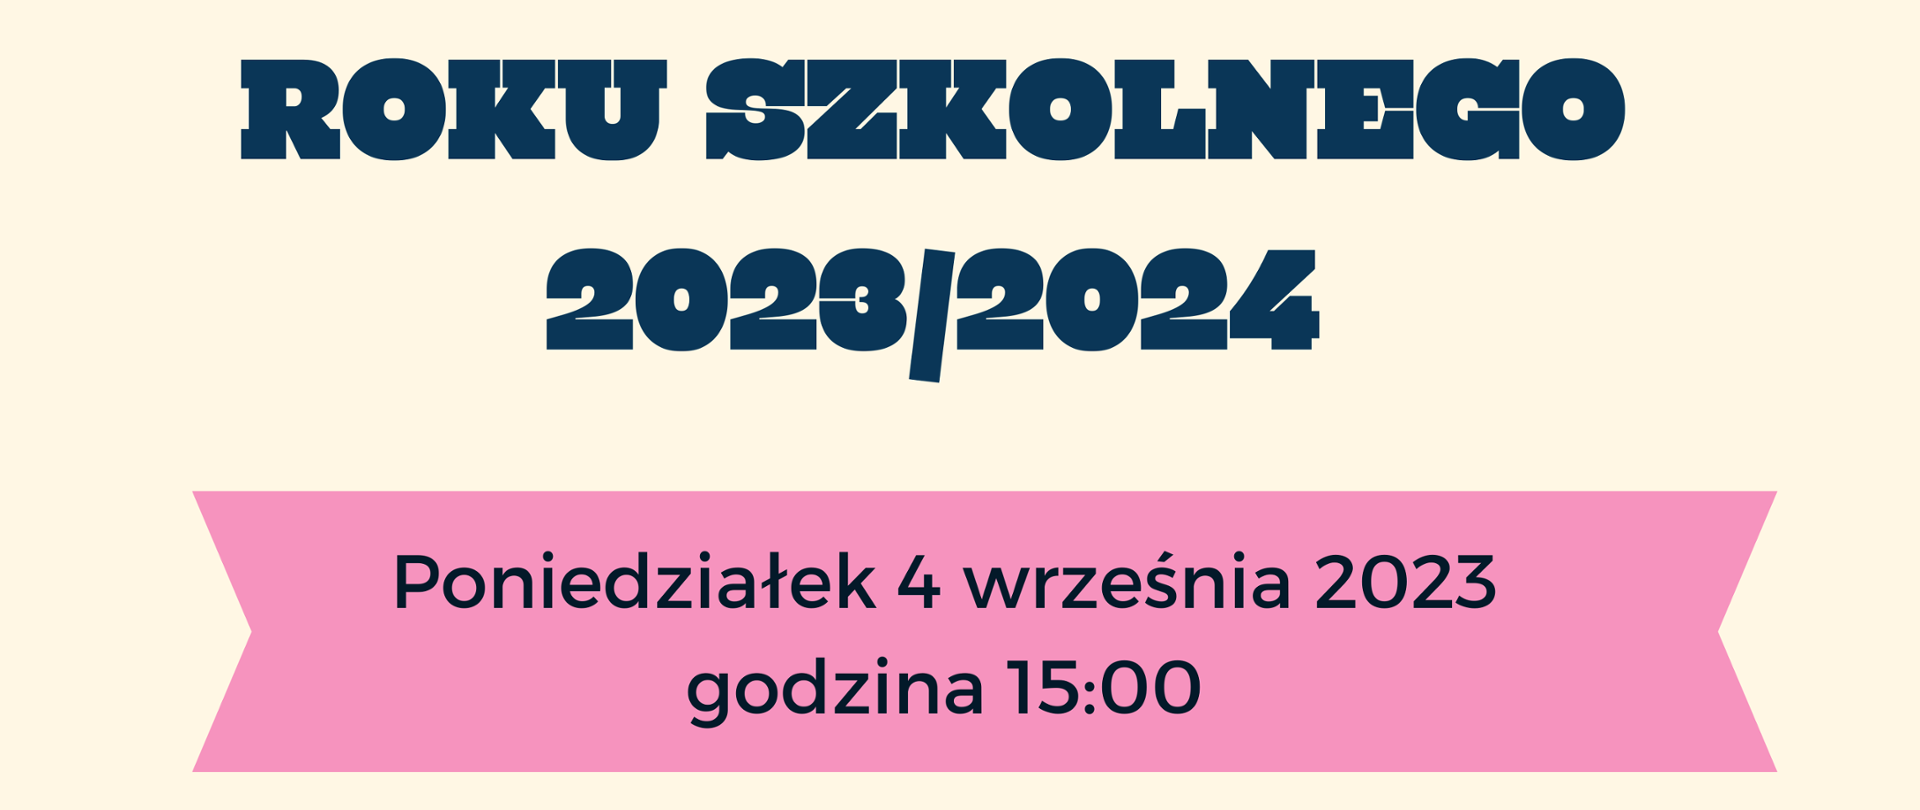 Informacja o rozpoczęciu roku szkolnego - 4 września 2023 o godz. 15.00 w auli PSM we Wschowie.